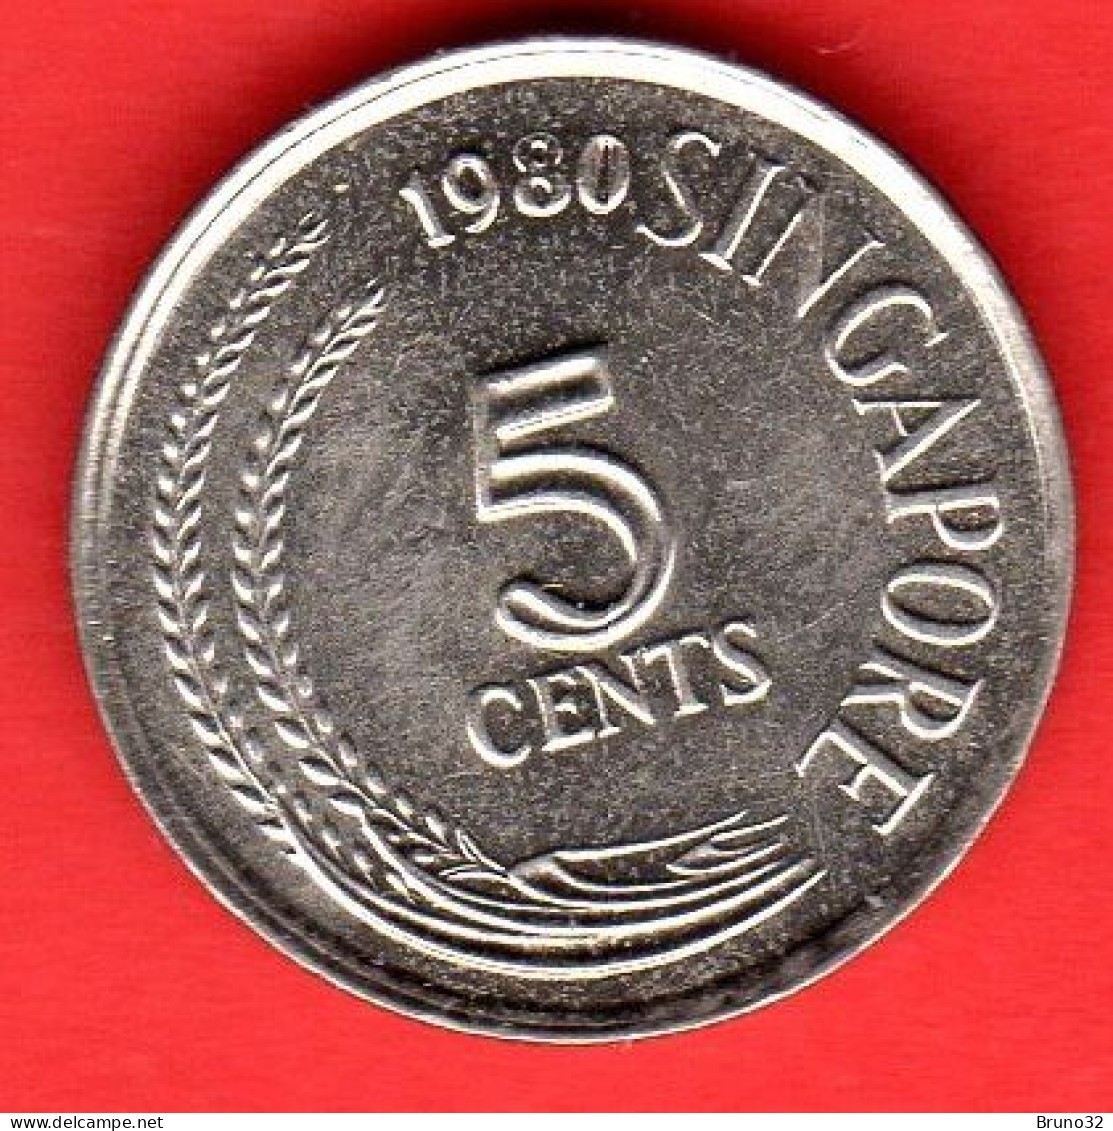 SINGAPORE - Singapura - 1980 - 5 Cents - QFDC/aUNC - Come Da Foto - Singapore